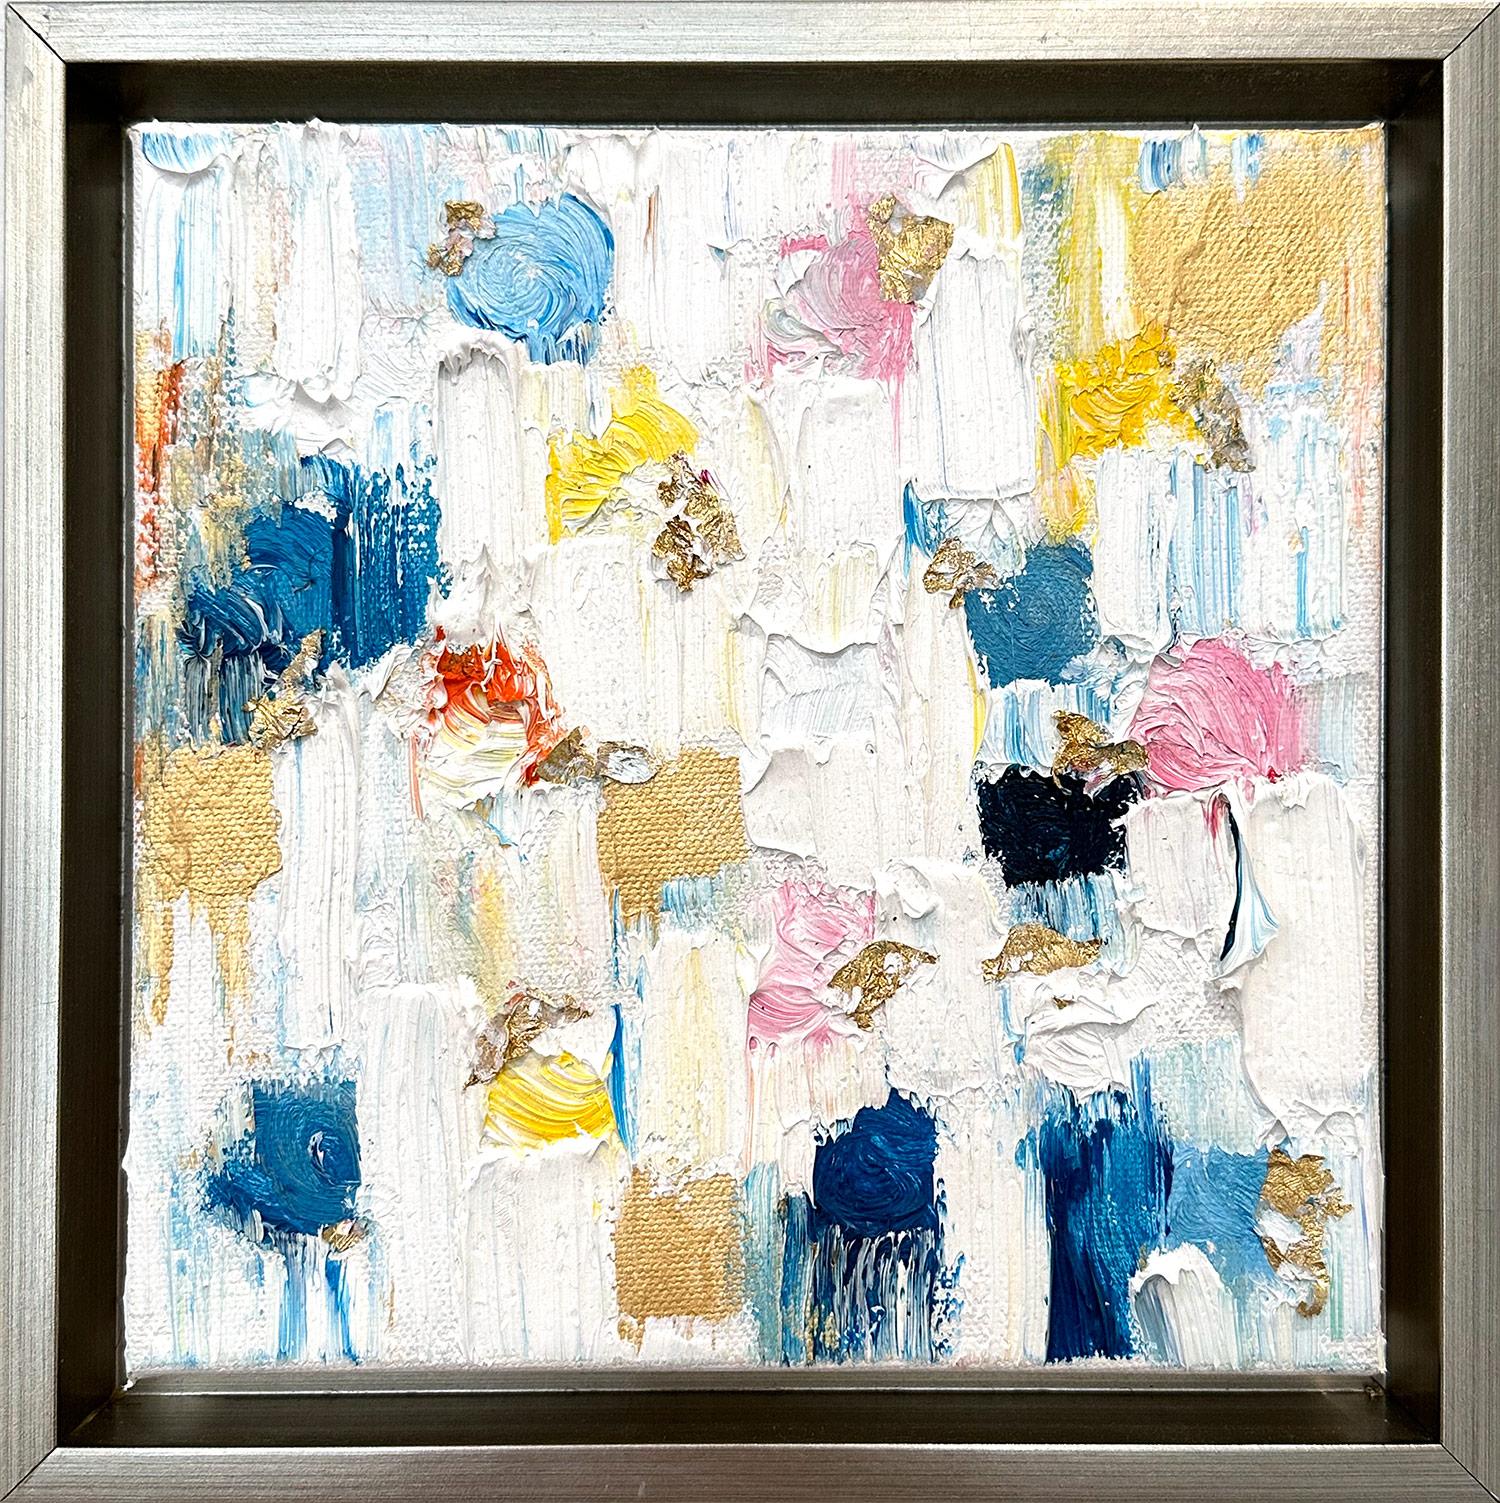 Abstract Painting Cindy Shaoul - "Dripping Dots - Palm Beach" Peinture à l'huile contemporaine multicolore sur toile encadrée